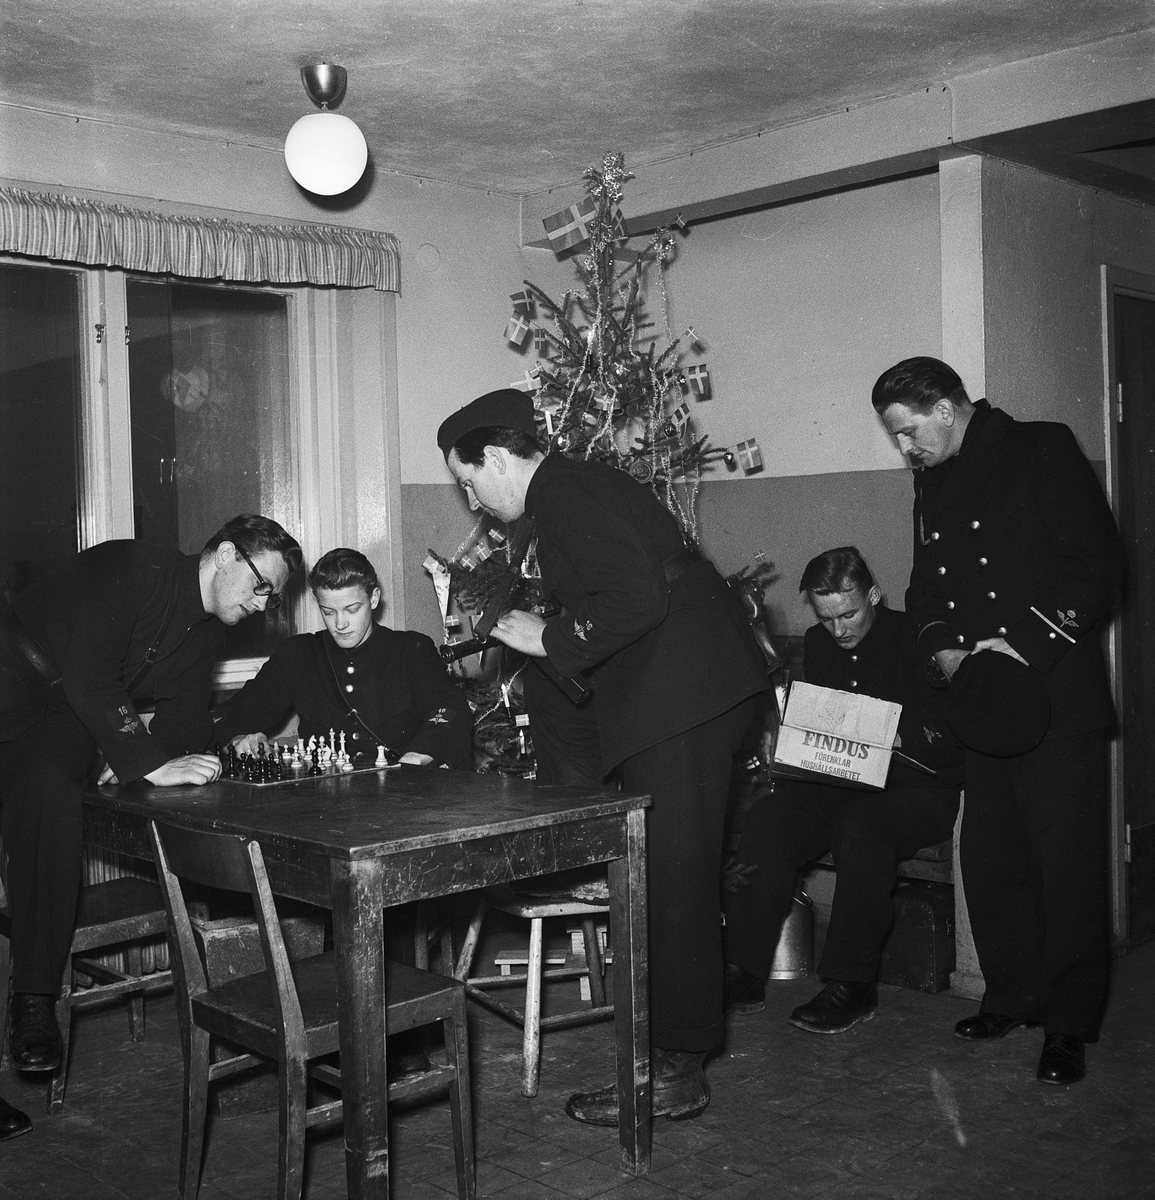 Män i uniform, Uppsala julen 1951